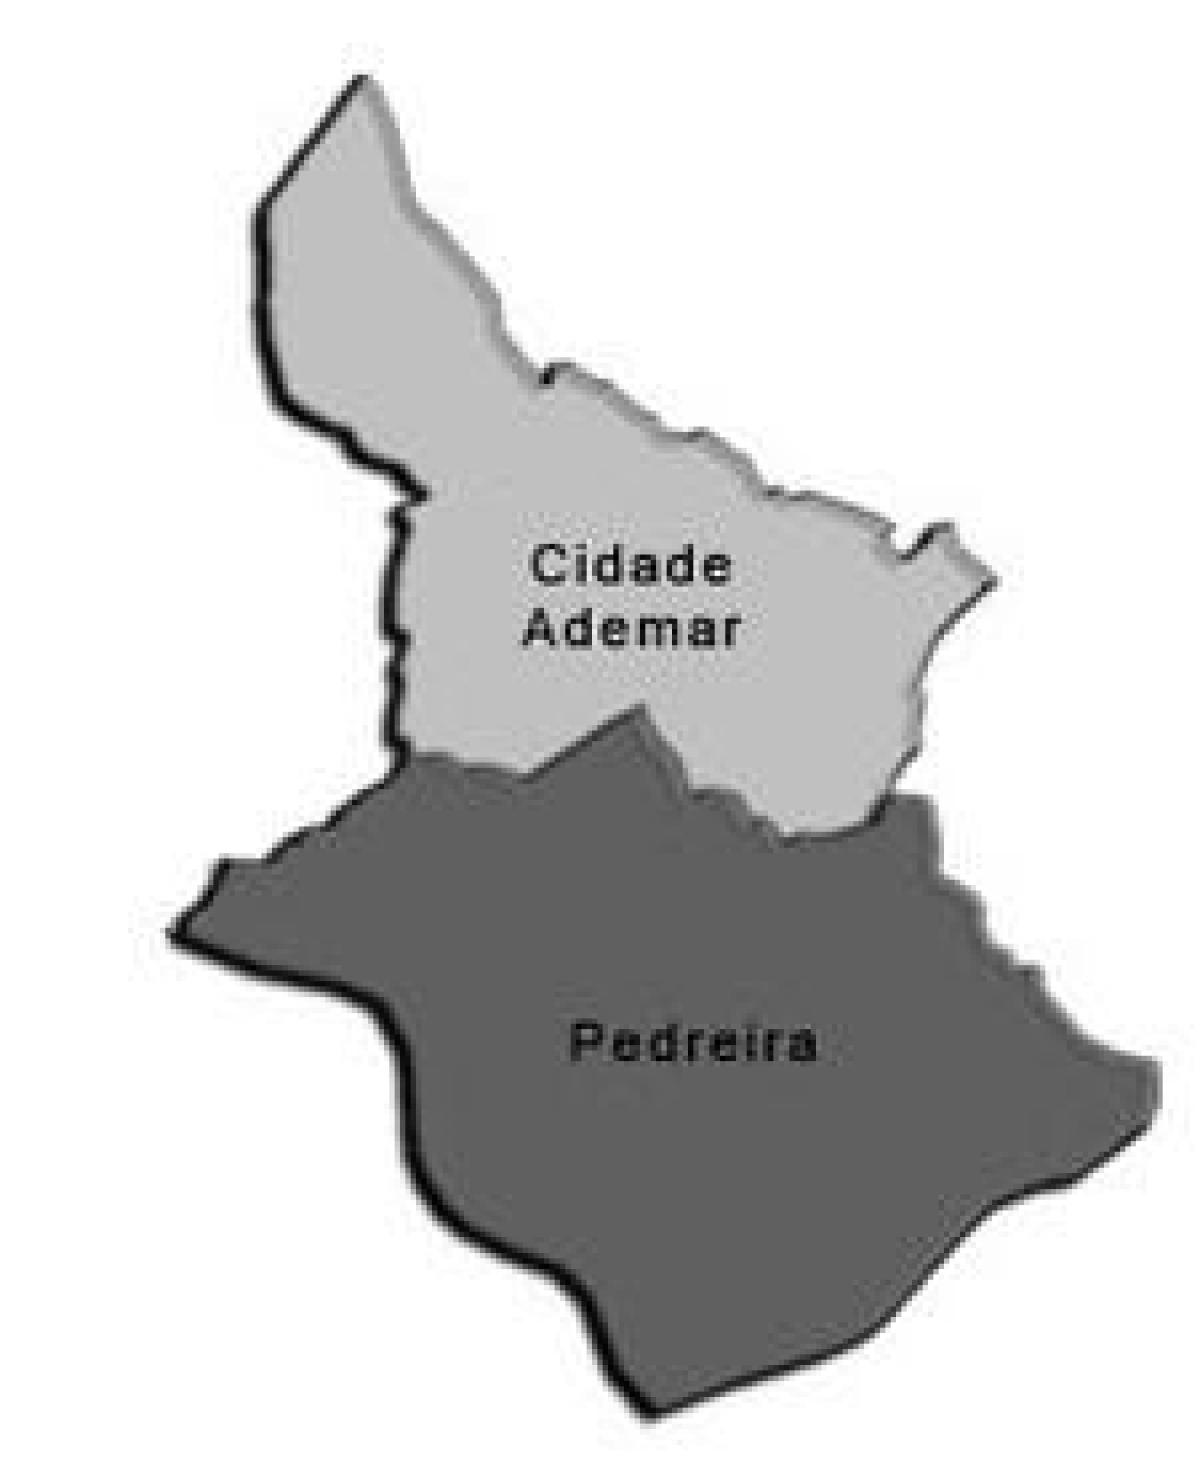 Mapa de Cidade Ademar subprefeitura